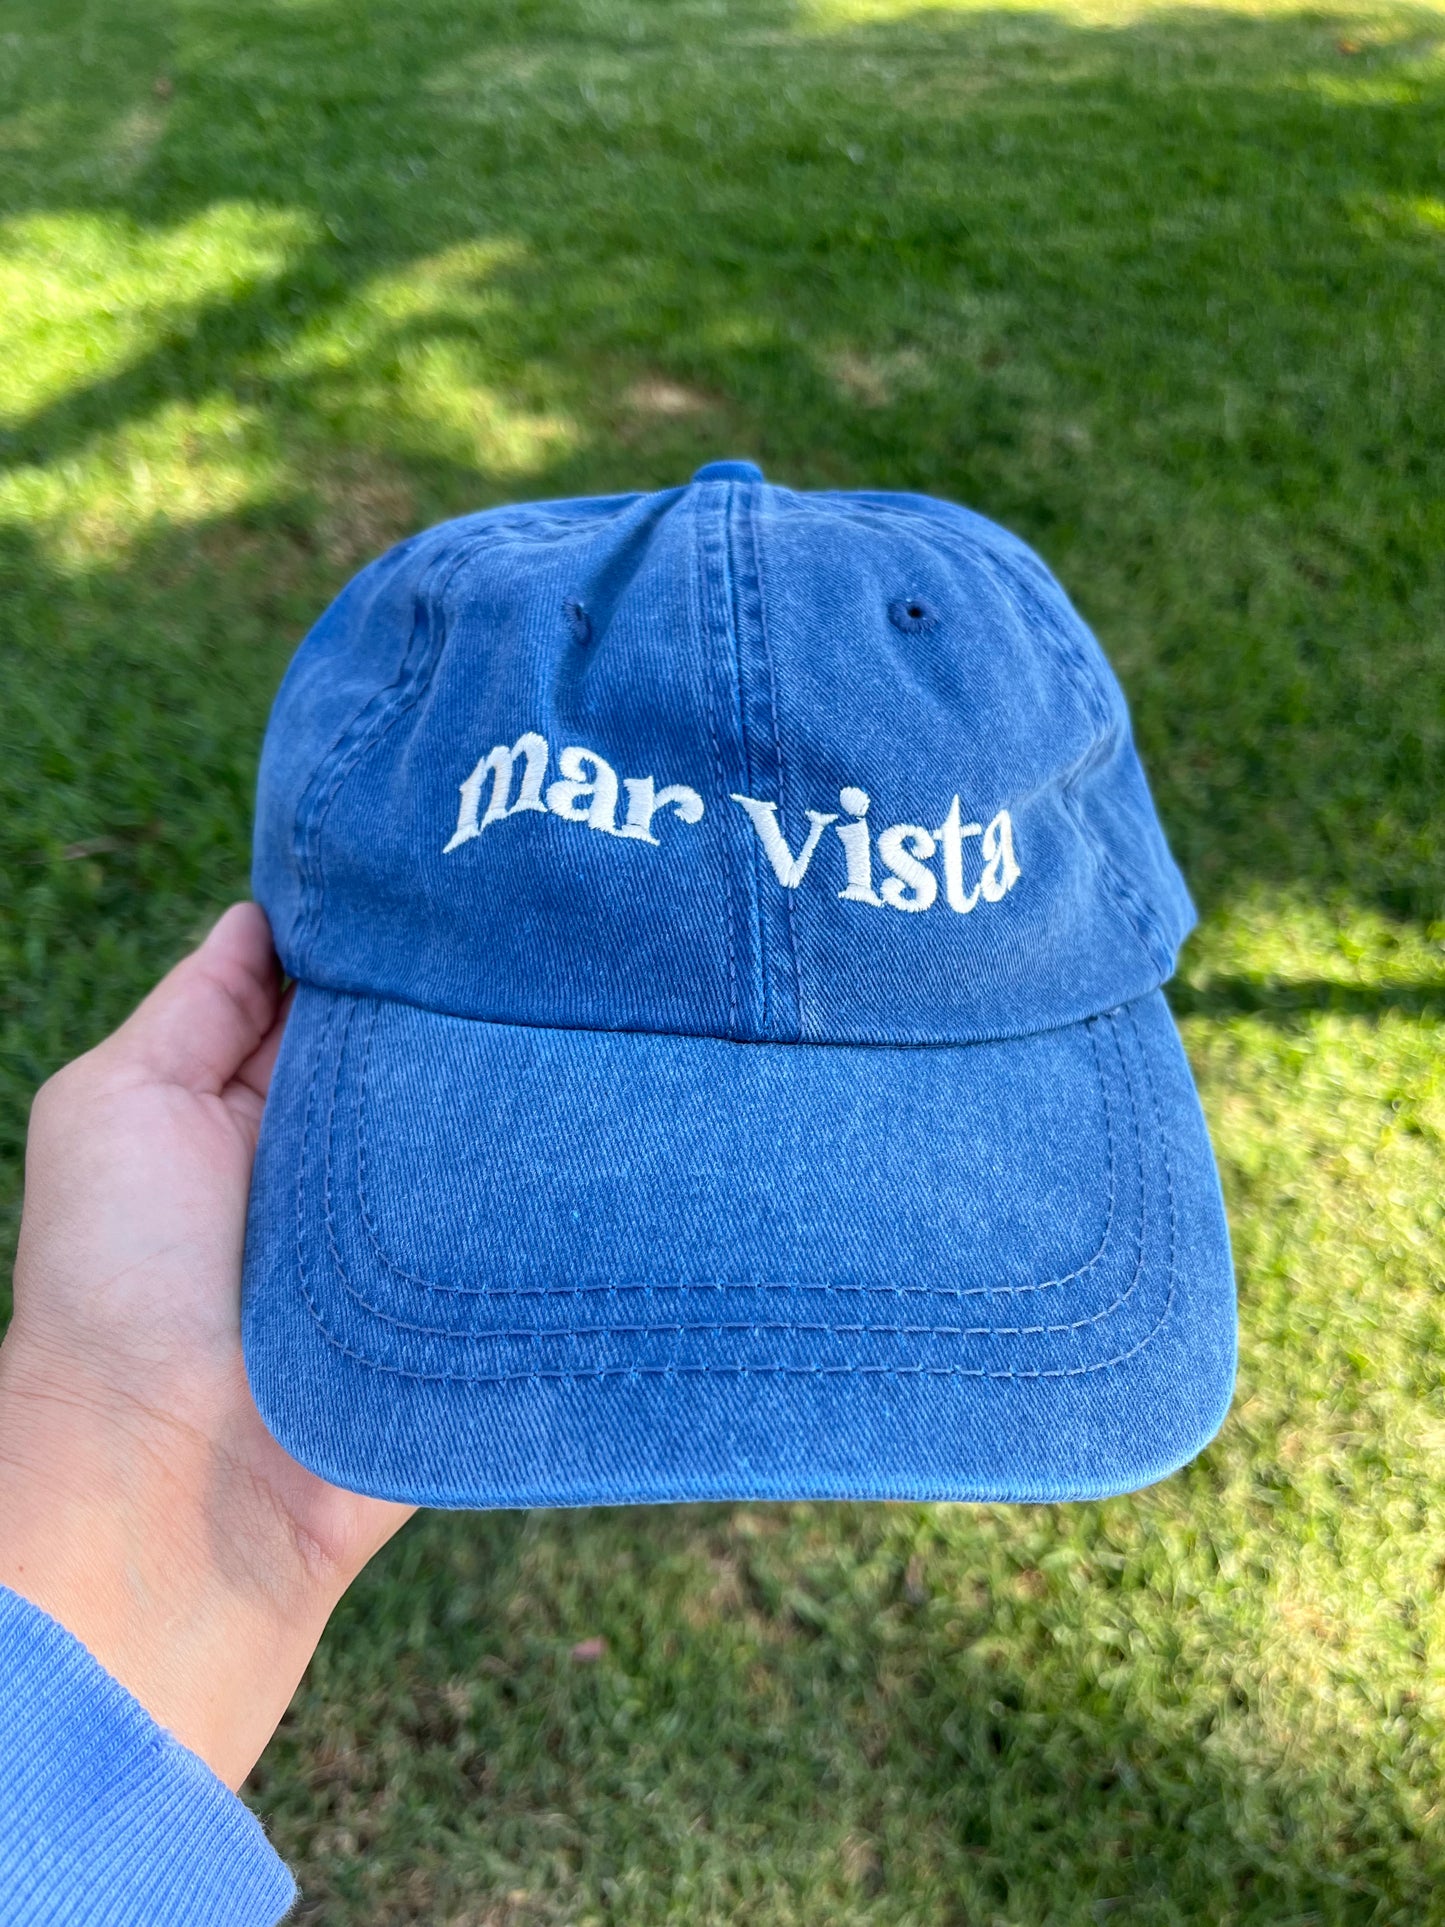 Mar Vista Vintage Washed Dad Hat